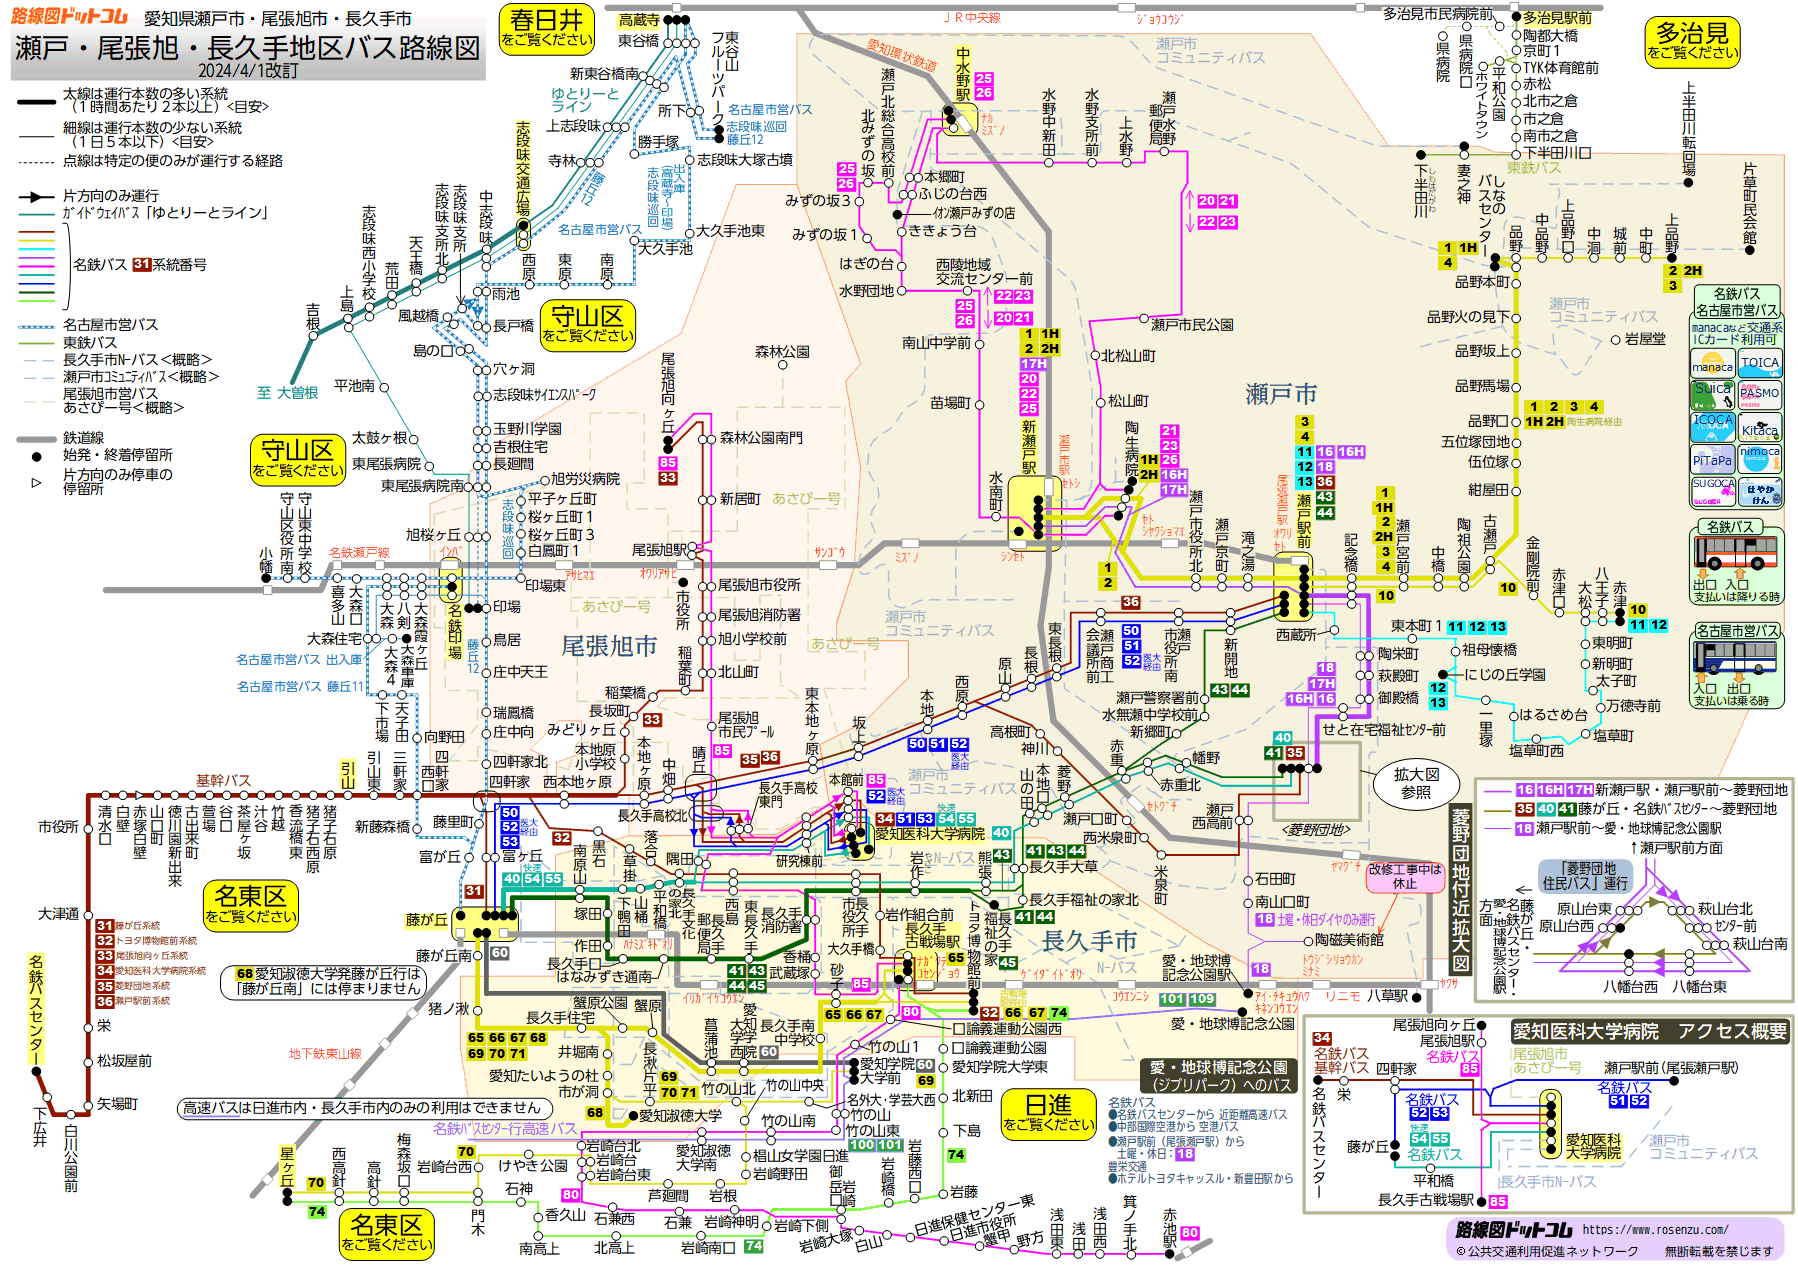 路線図ドットコム 愛知県 瀬戸 尾張旭 長久手地区バス路線図